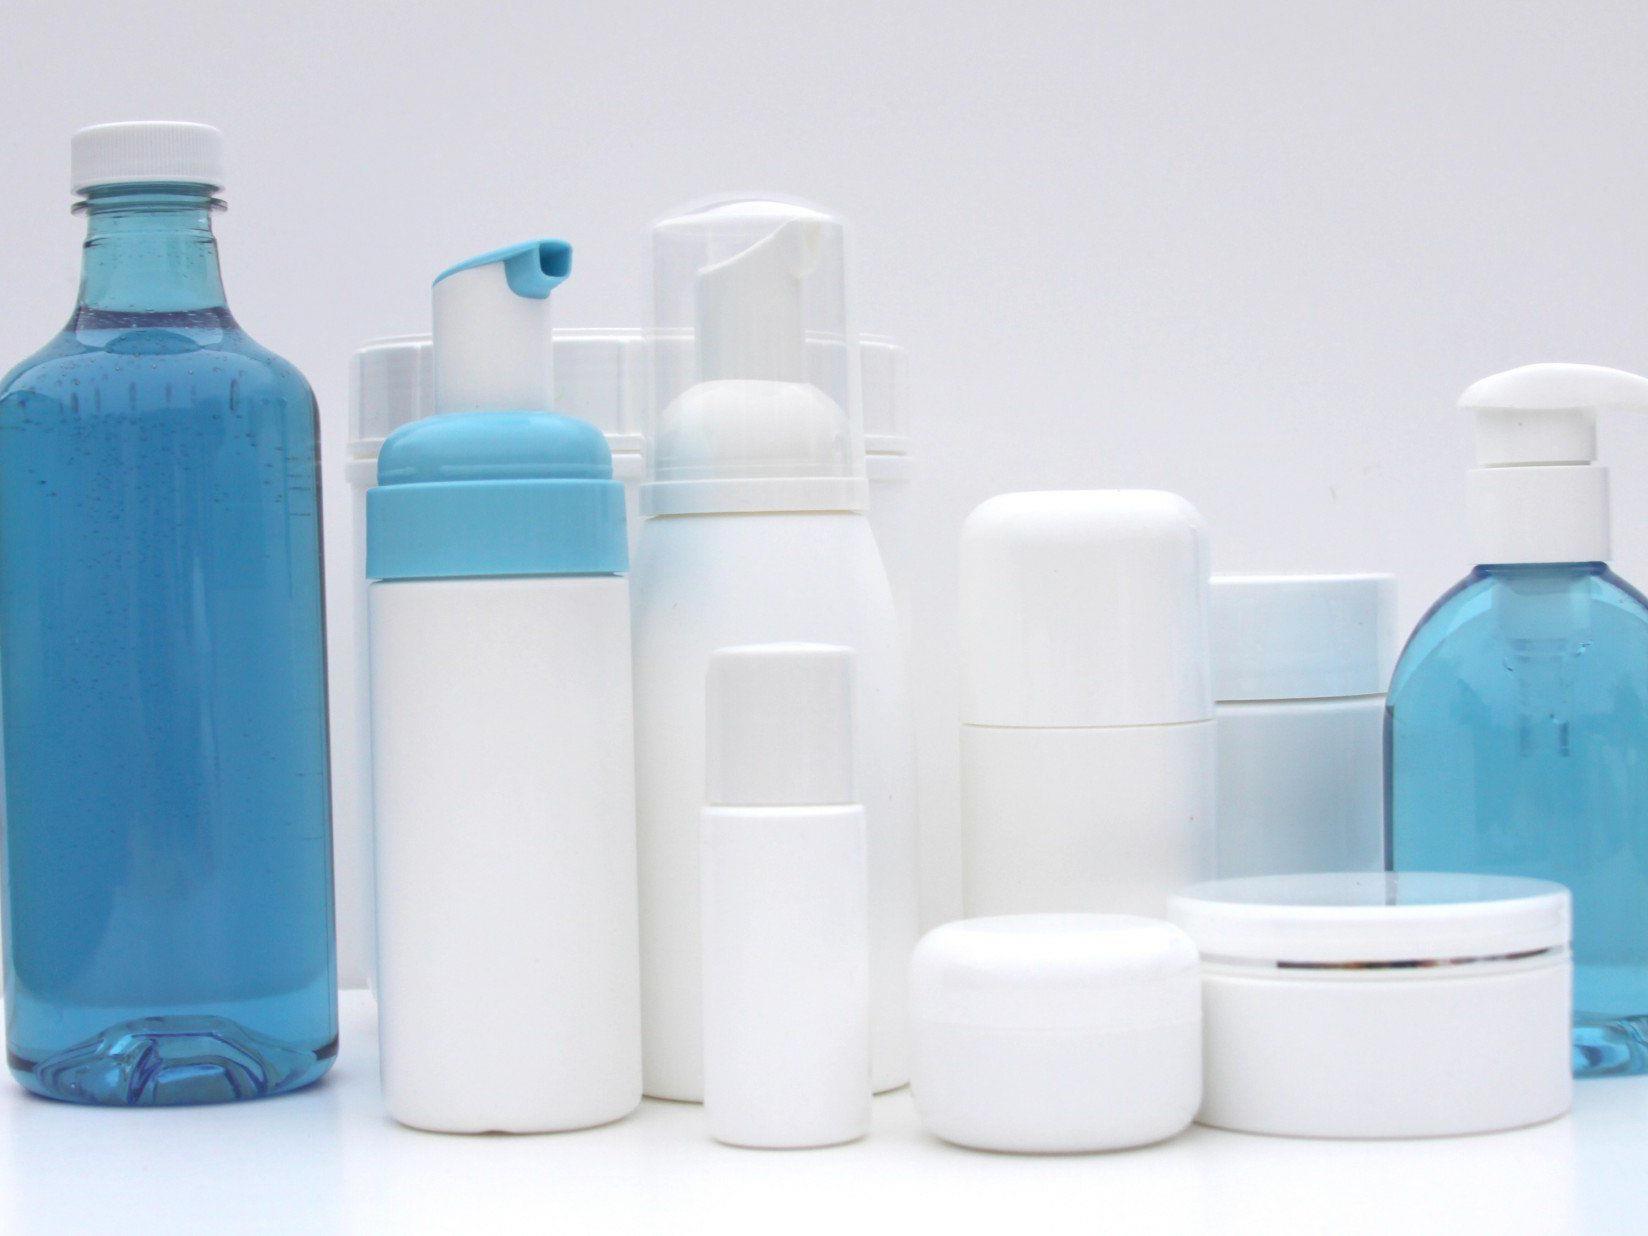 Mikroplastik in Kosmetika: Winzige Plastik-Teilchen gelangen in Gewässer und Nahrungskette